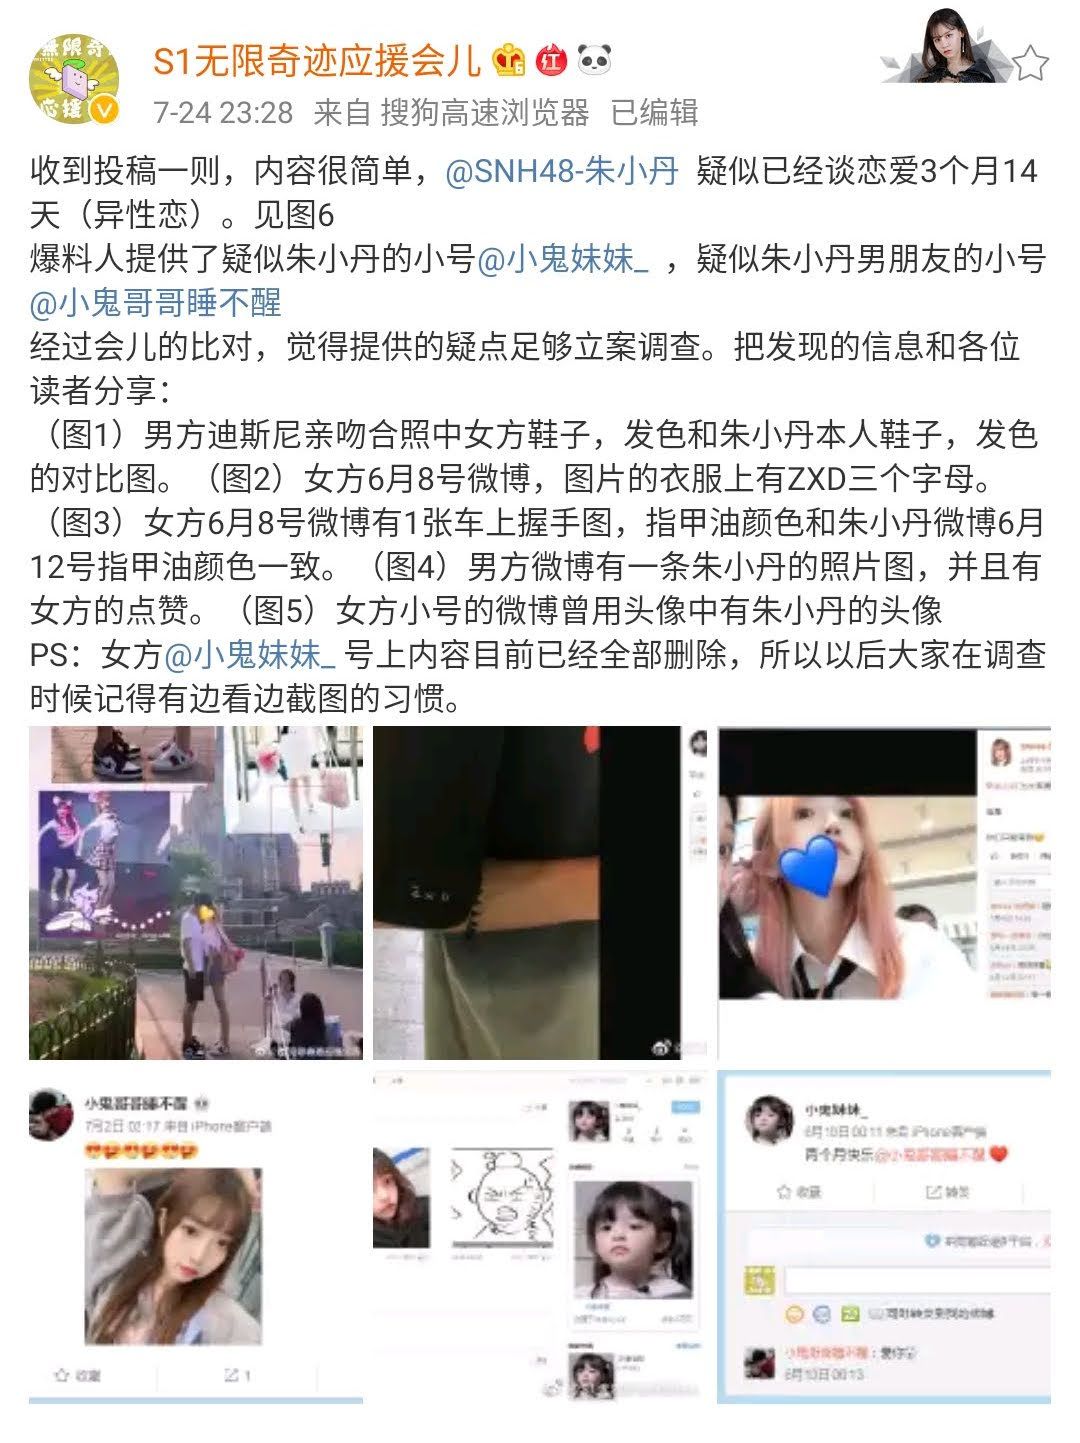 SNH48朱小丹についての投稿